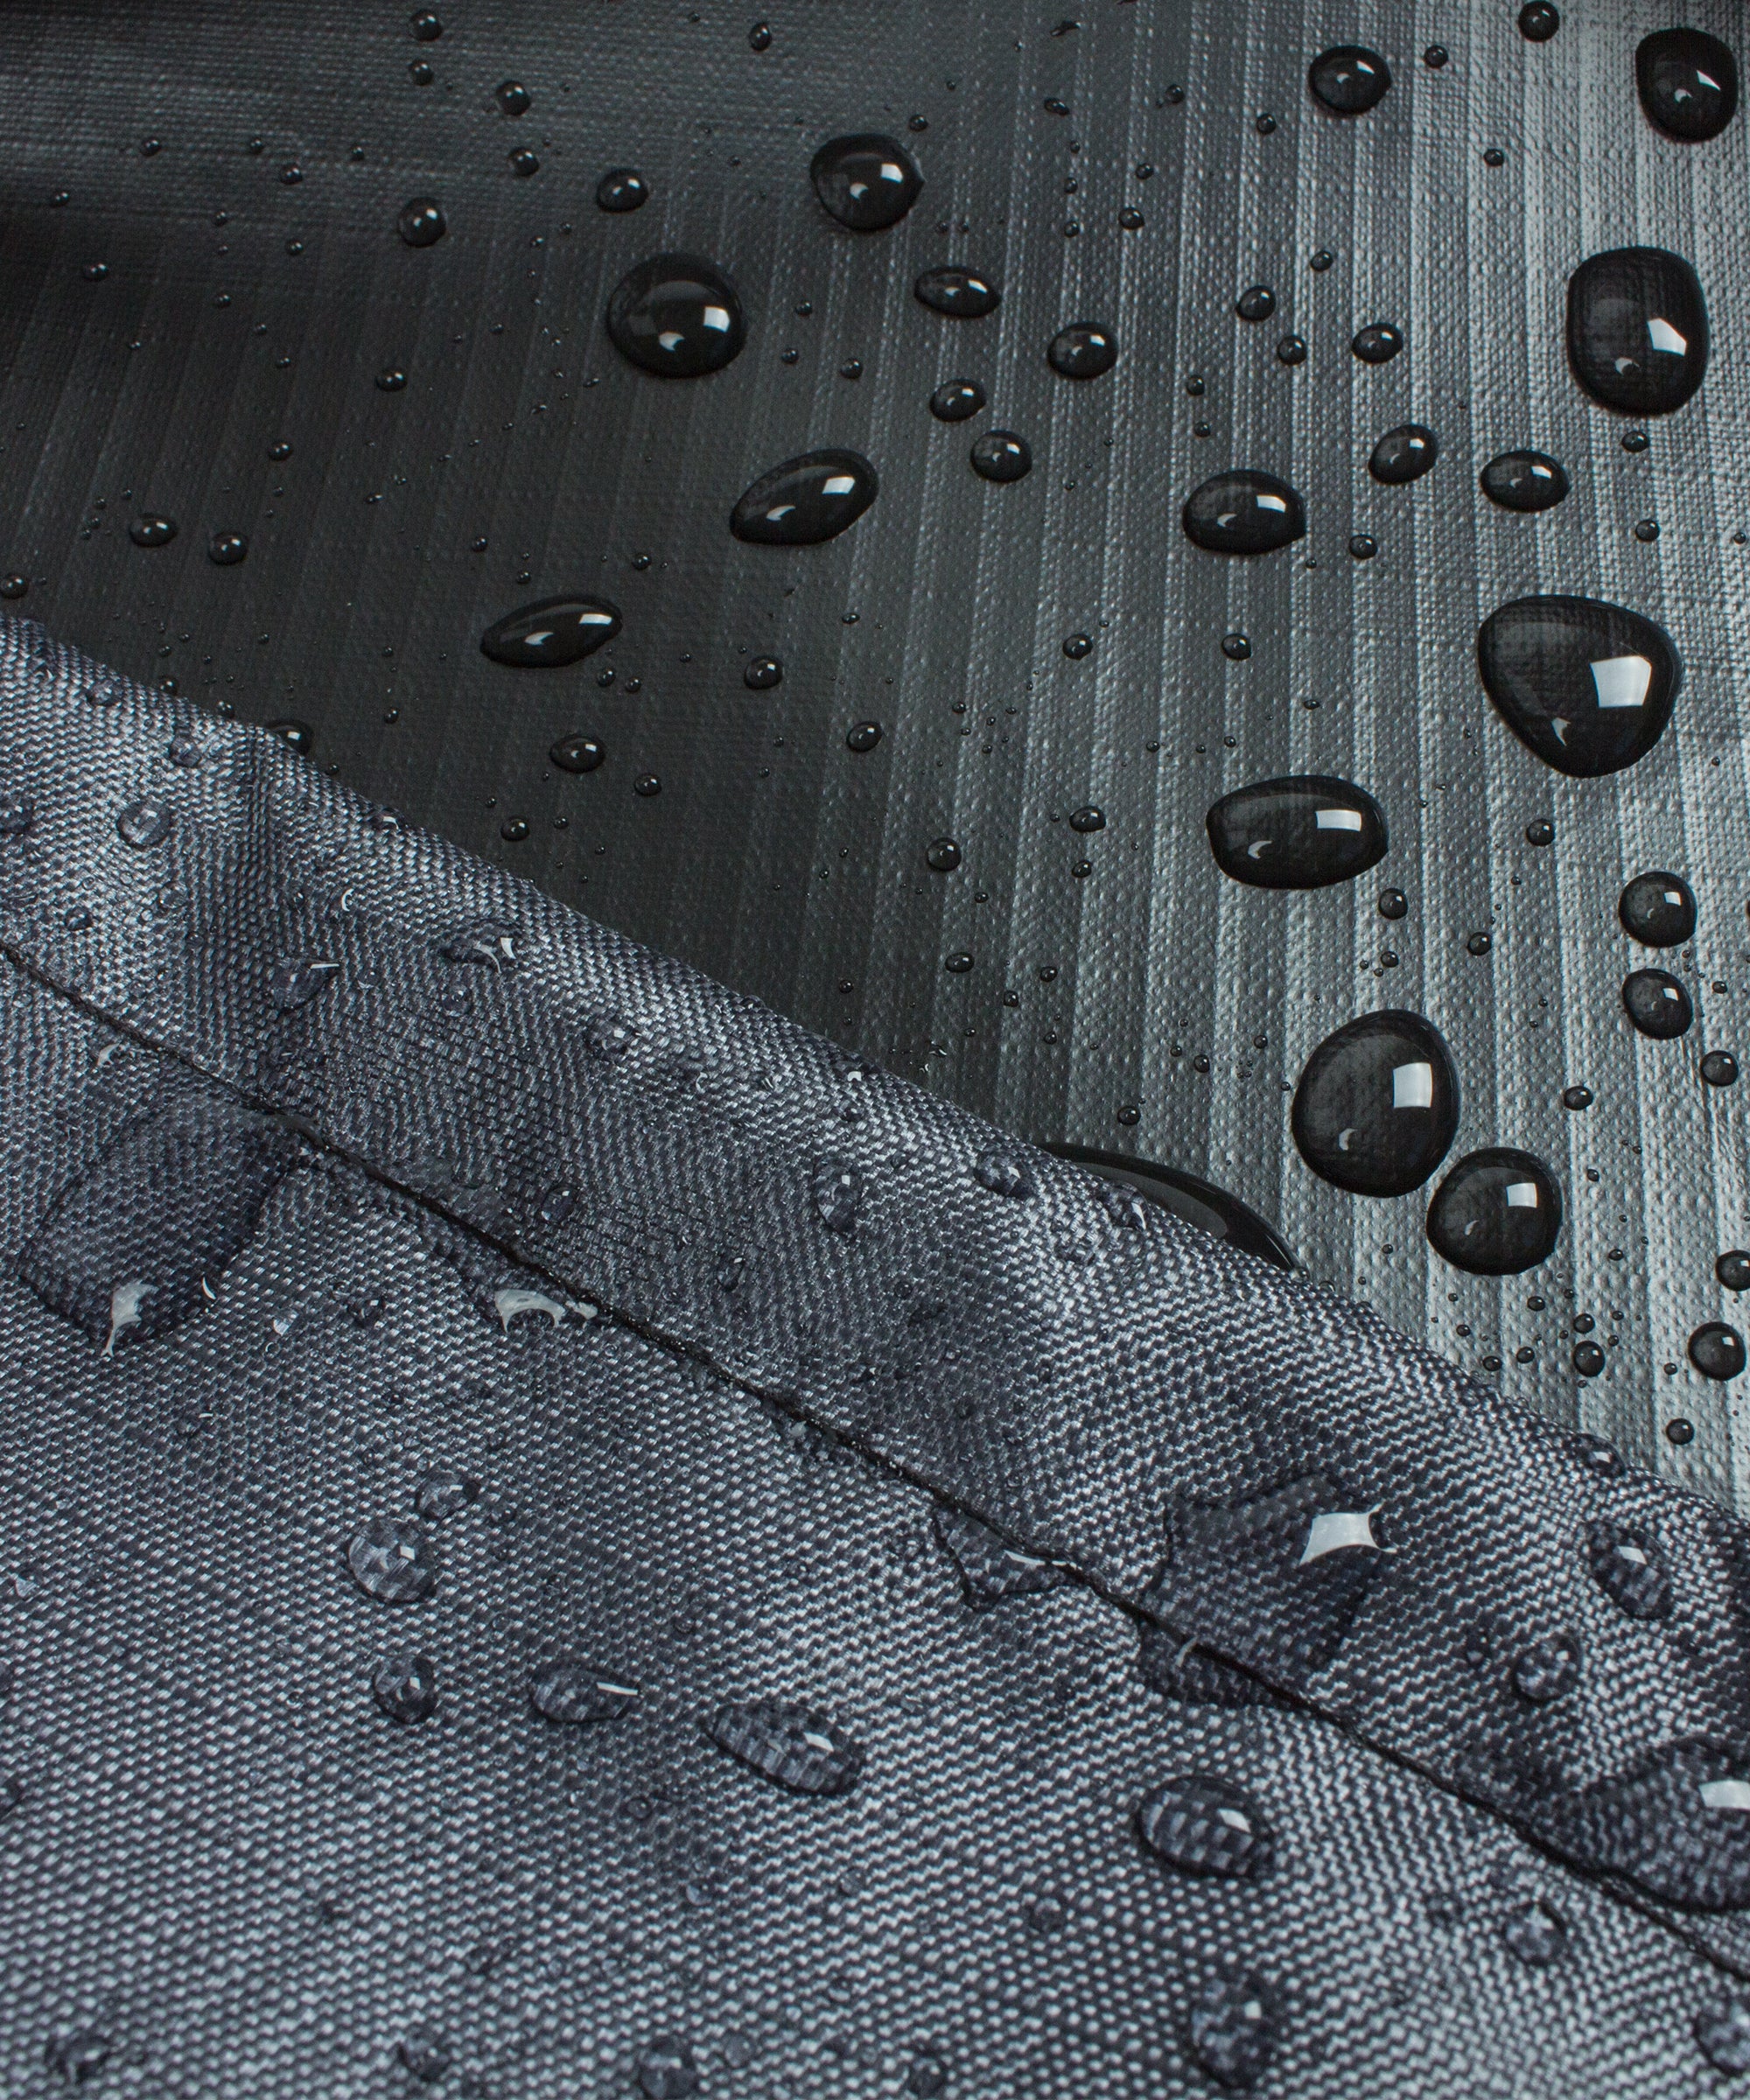 COV-M902 Premium Mercury Cover XL Umbrellas